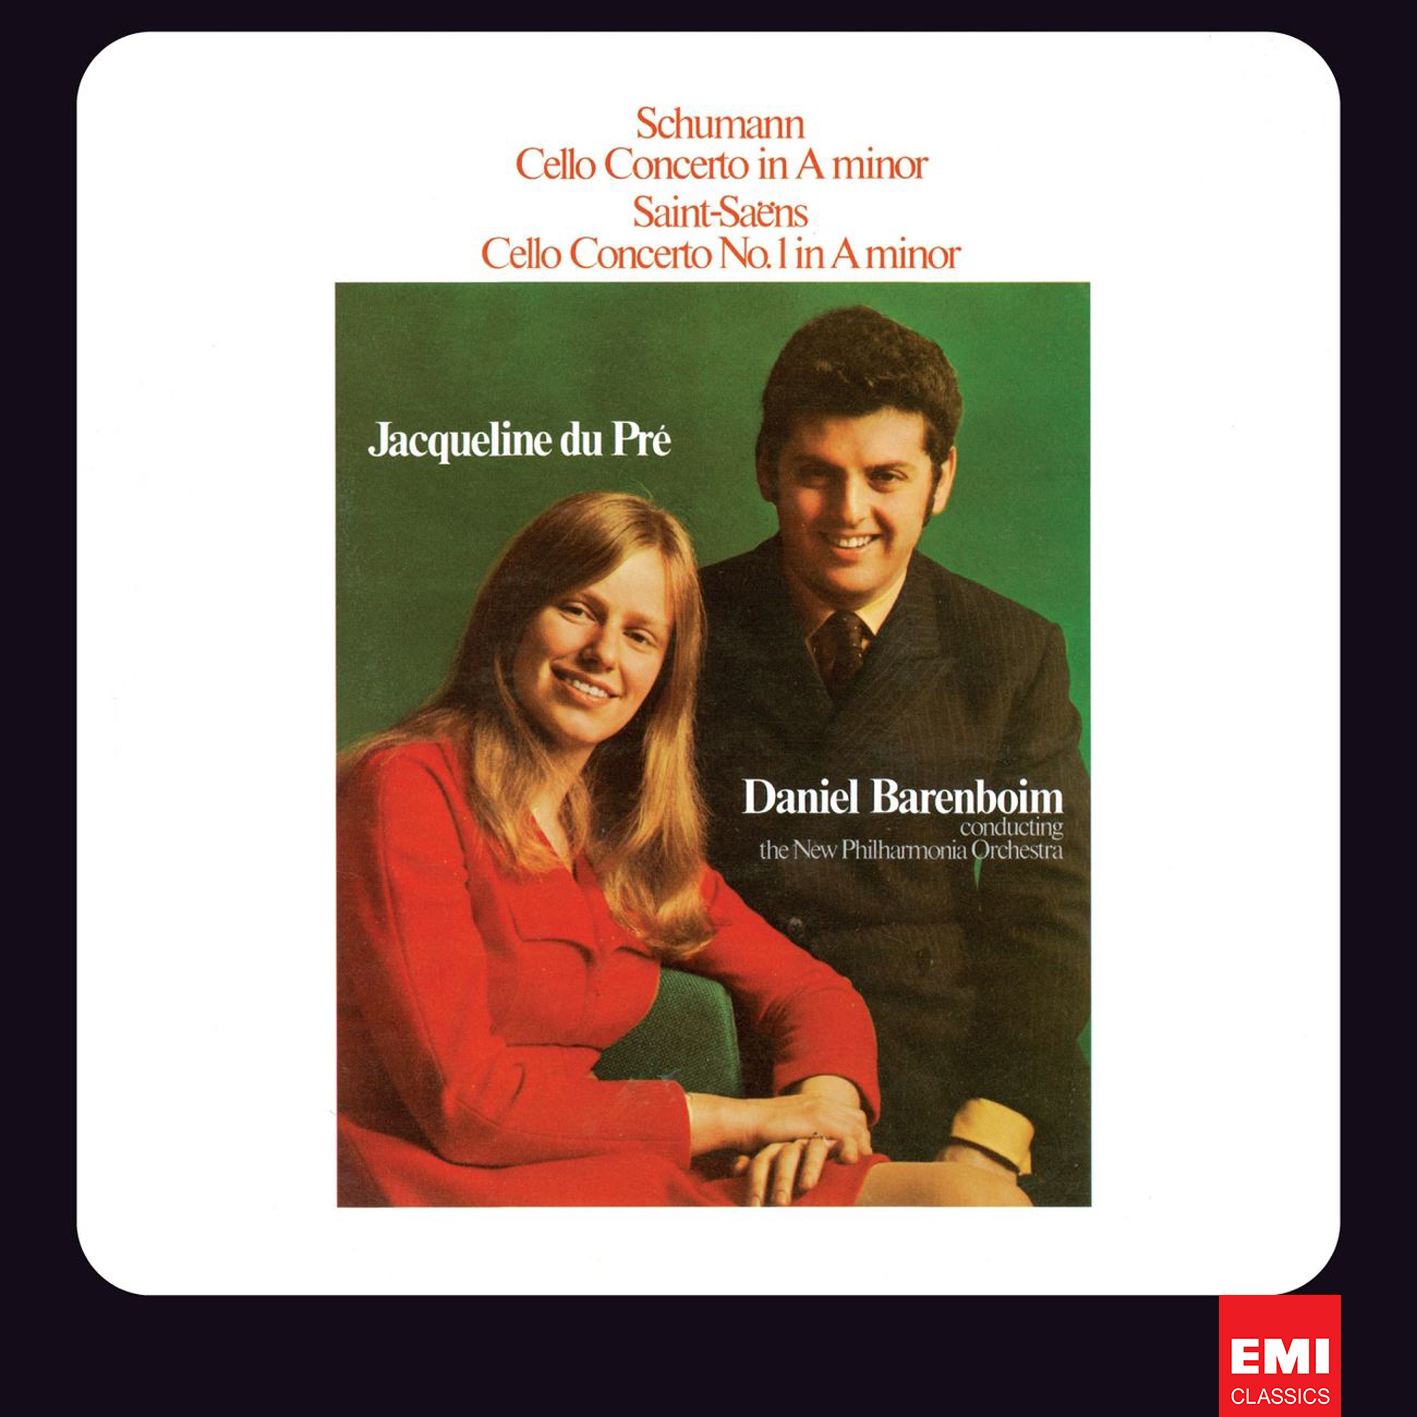 Jacqueline du Pre, Daniel Barenboim – Schumann, Saint-Saens: Cello Concertos (1969/2012) [HDTracks FLAC 24bit/96kHz]